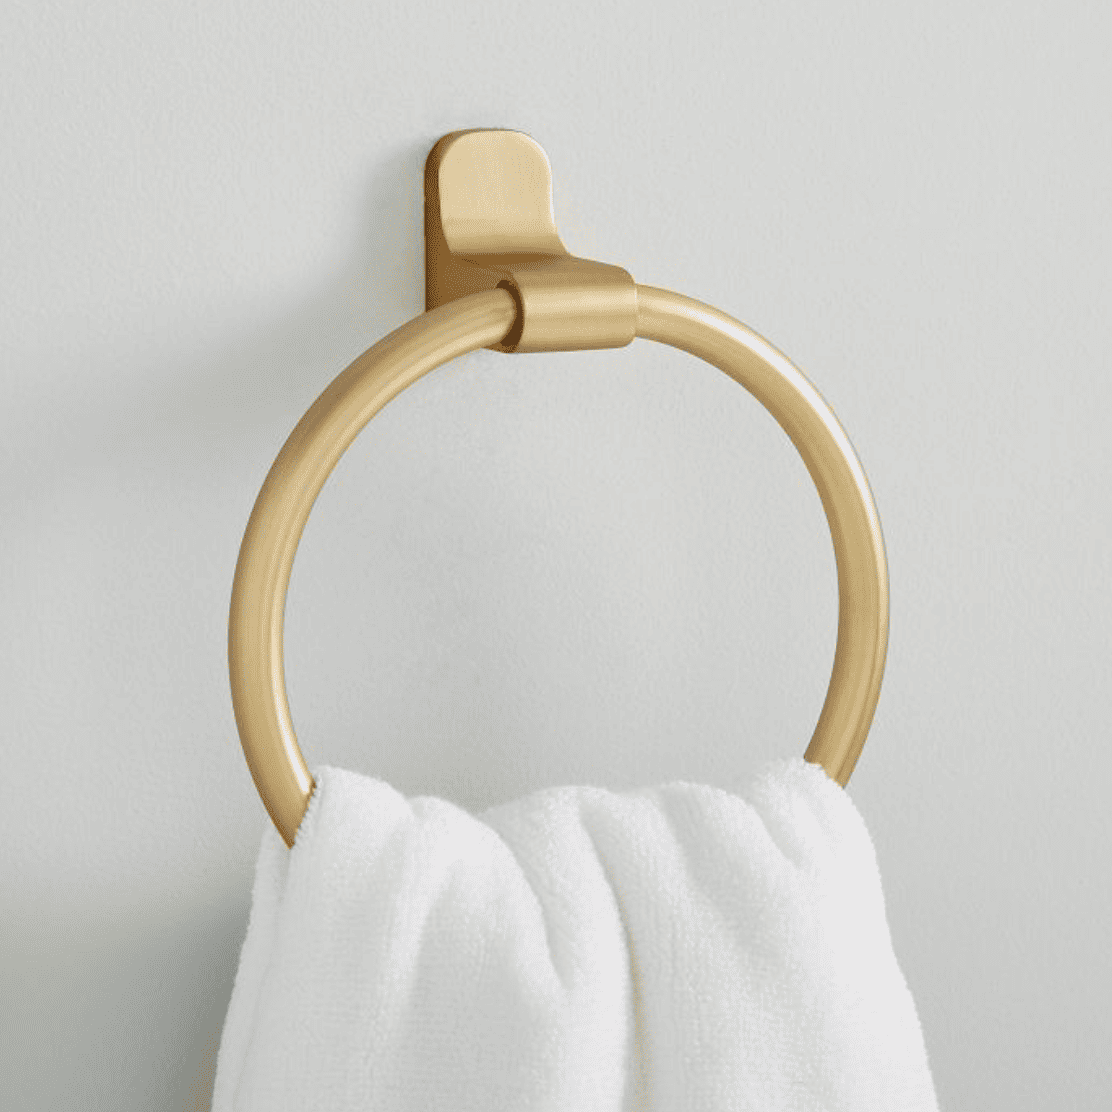 brass towel ring